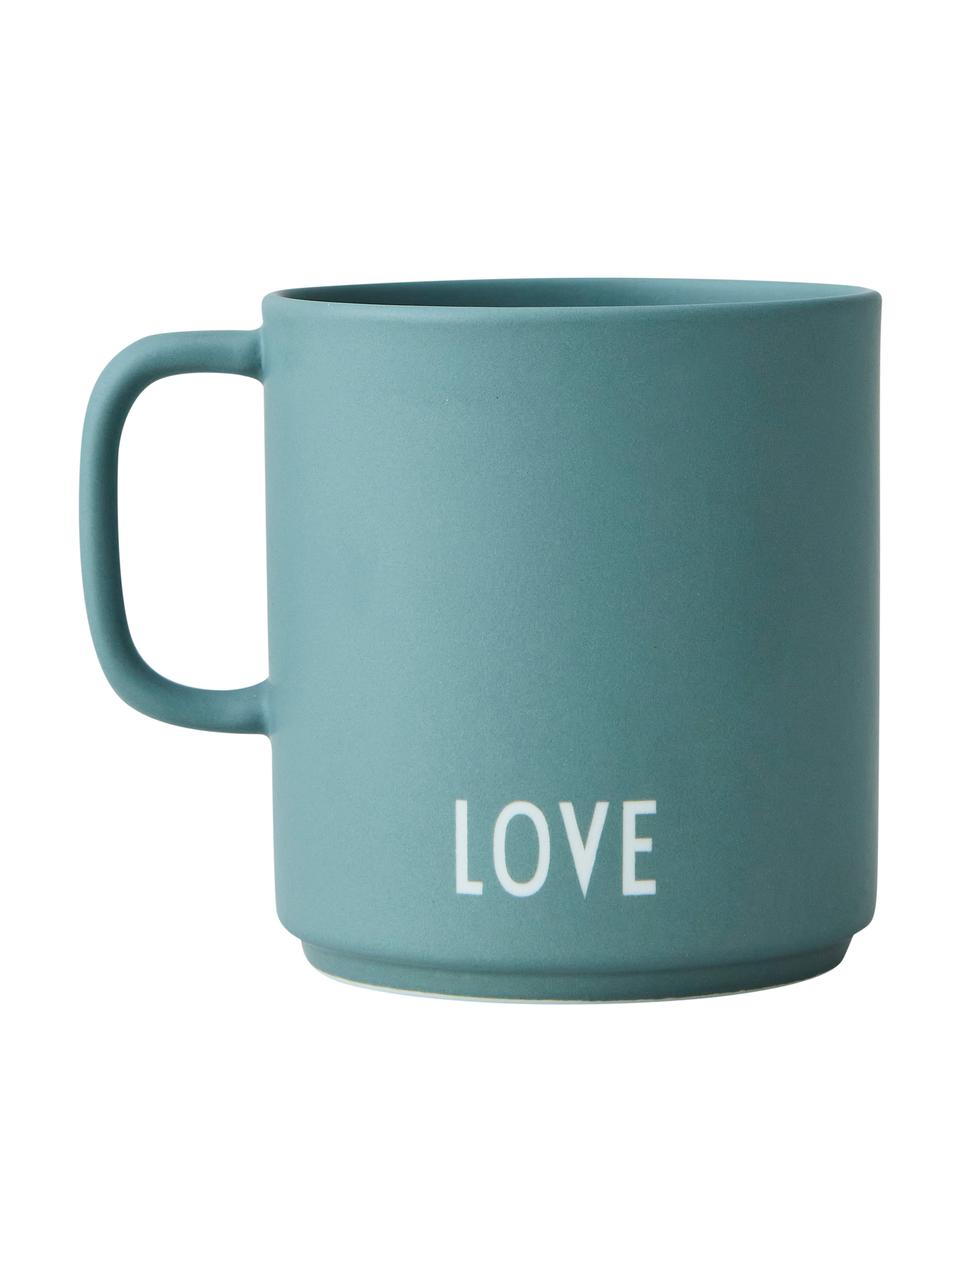 Dizajnová kávová šálka s rôznymi nápismi na prednej a zadnej strane Favourite GRANDDAD/LOVE, Smaragdová, matná, biela